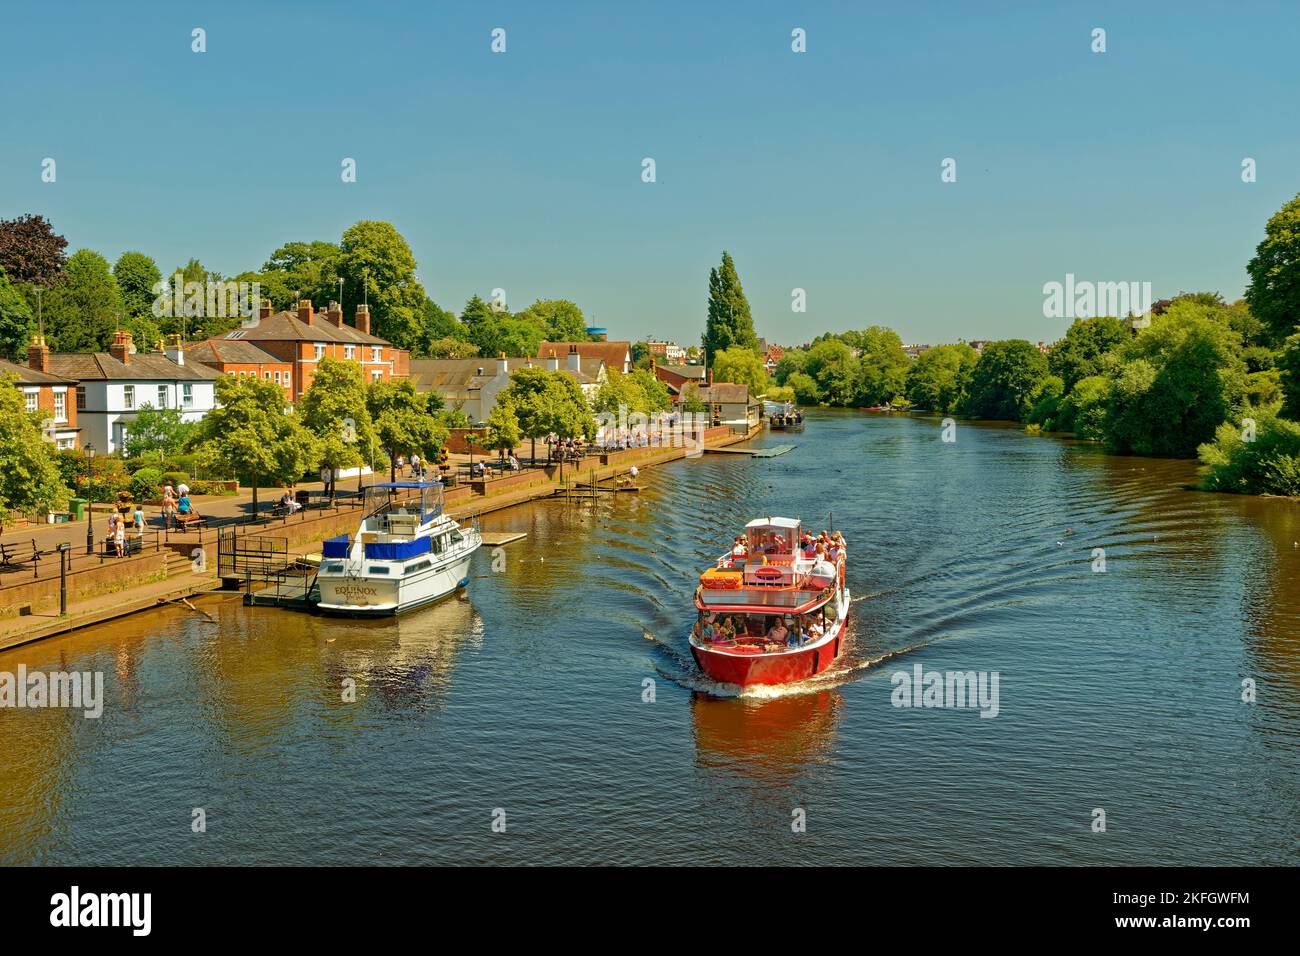 Sportboote auf dem Fluss Dee in Chester, der Grafschaftsstadt Cheshire in England. Stockfoto